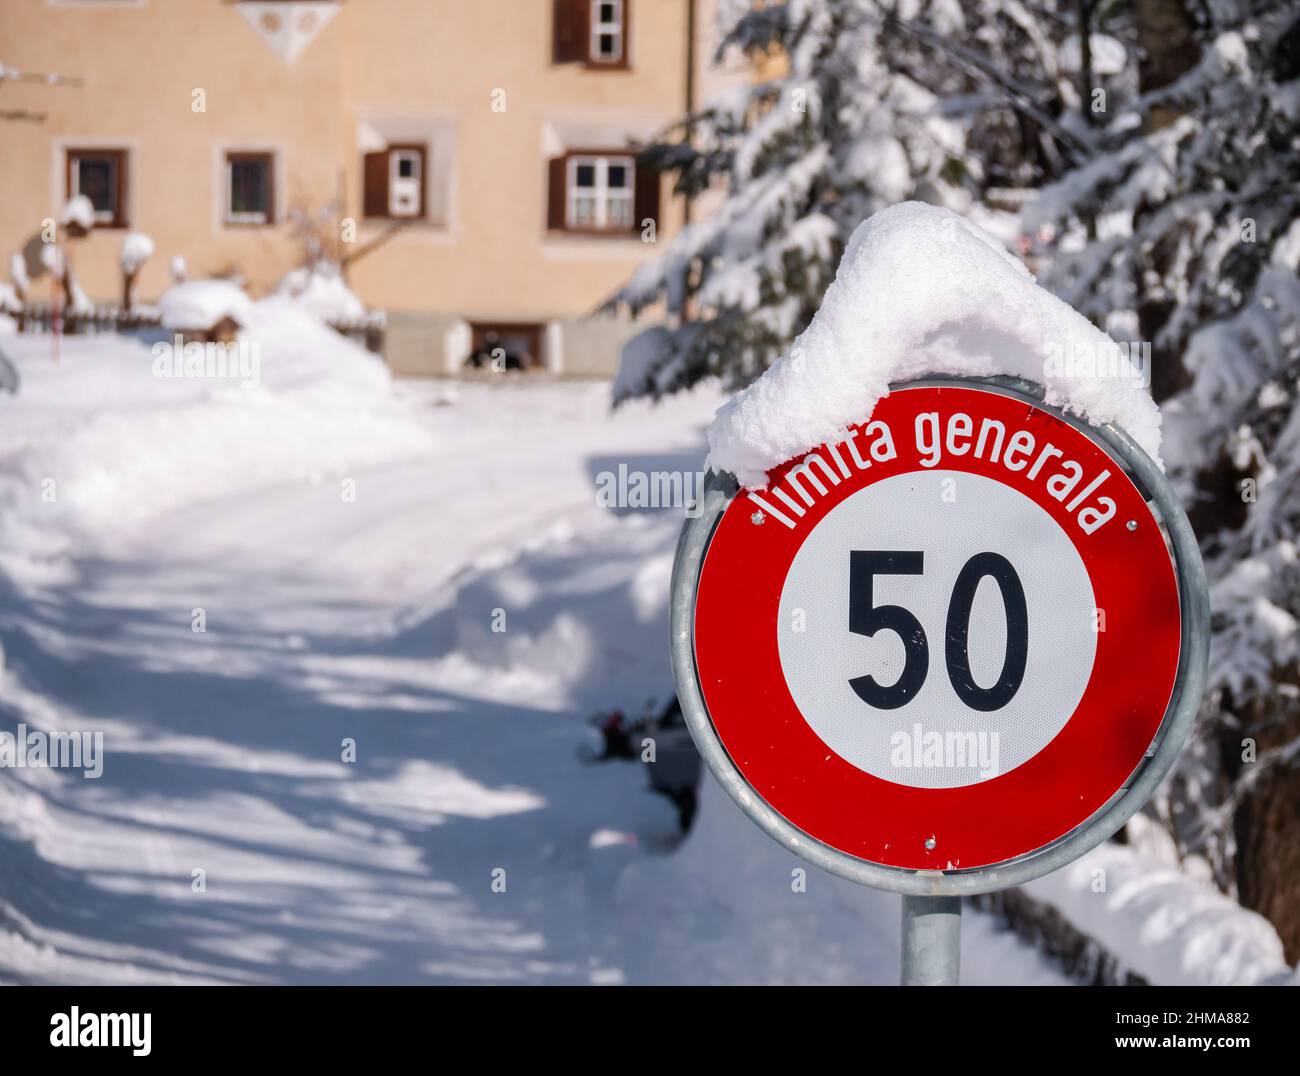 Cinuos-Chel, Schweiz - 3. Februar 2022: Schneebedecktes Straßenschild für Geschwindigkeitsbegrenzung auf 50 km in romanischer Sprache im schweizer Dorf Cinuos-CH Stockfoto